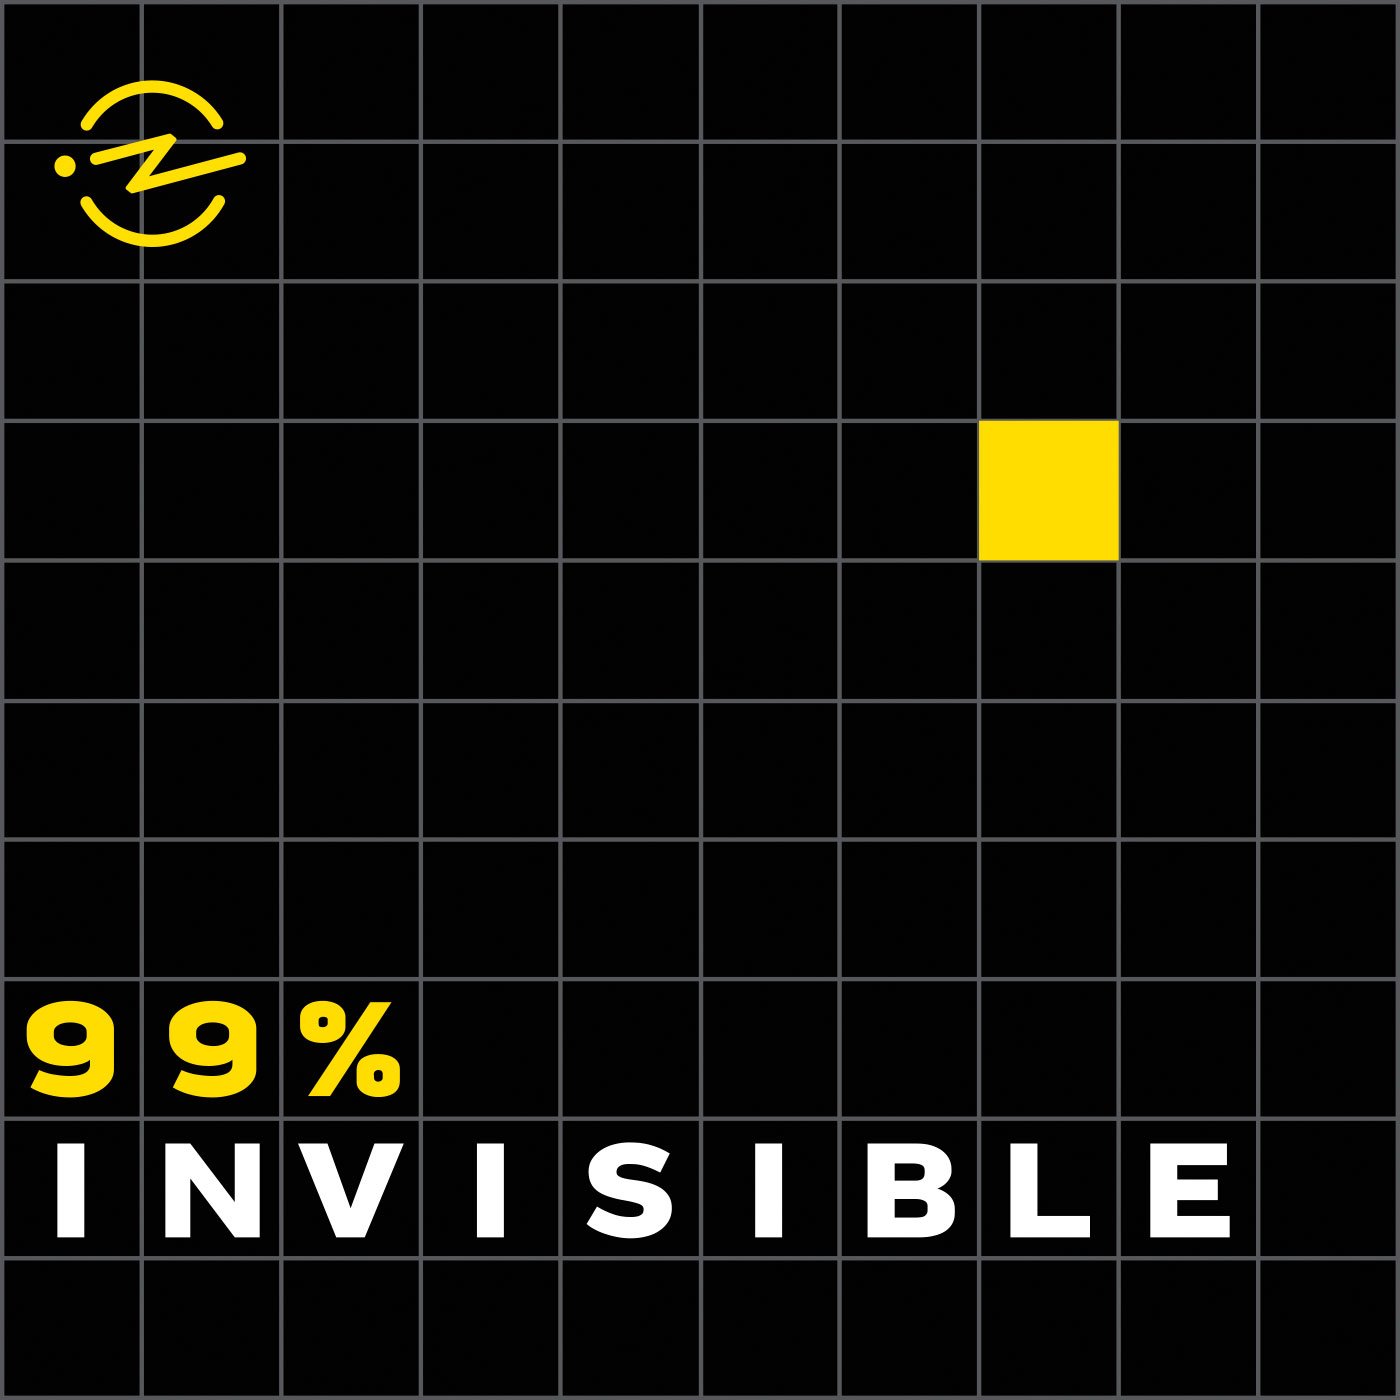 99 % Invisible: Der sehr informative Podcast handelt wöchentlich in 20- bis 60-minütigen Sessions Design in all seinen Facetten ab. Von Produktgestaltung über Architektur bis hin zu Stadtplanung, Sound- und Webdesign ist alles dabei. Wie der Titel suggeriert, widmet man sich hier Dingen, die sonst oft im Verborgenen bleiben. 